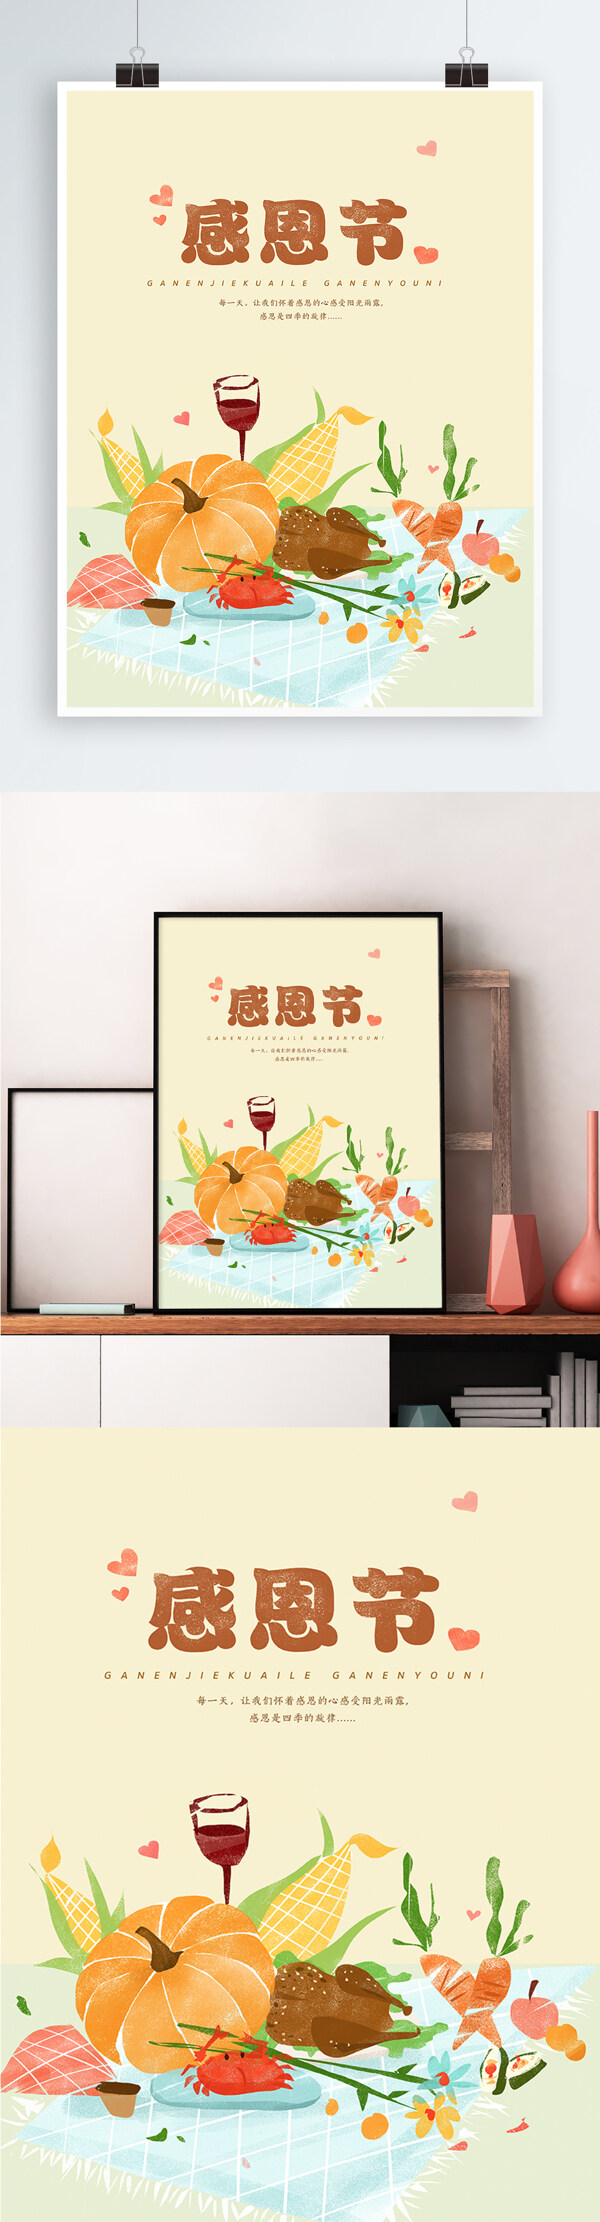 感恩节美食插画手绘海报